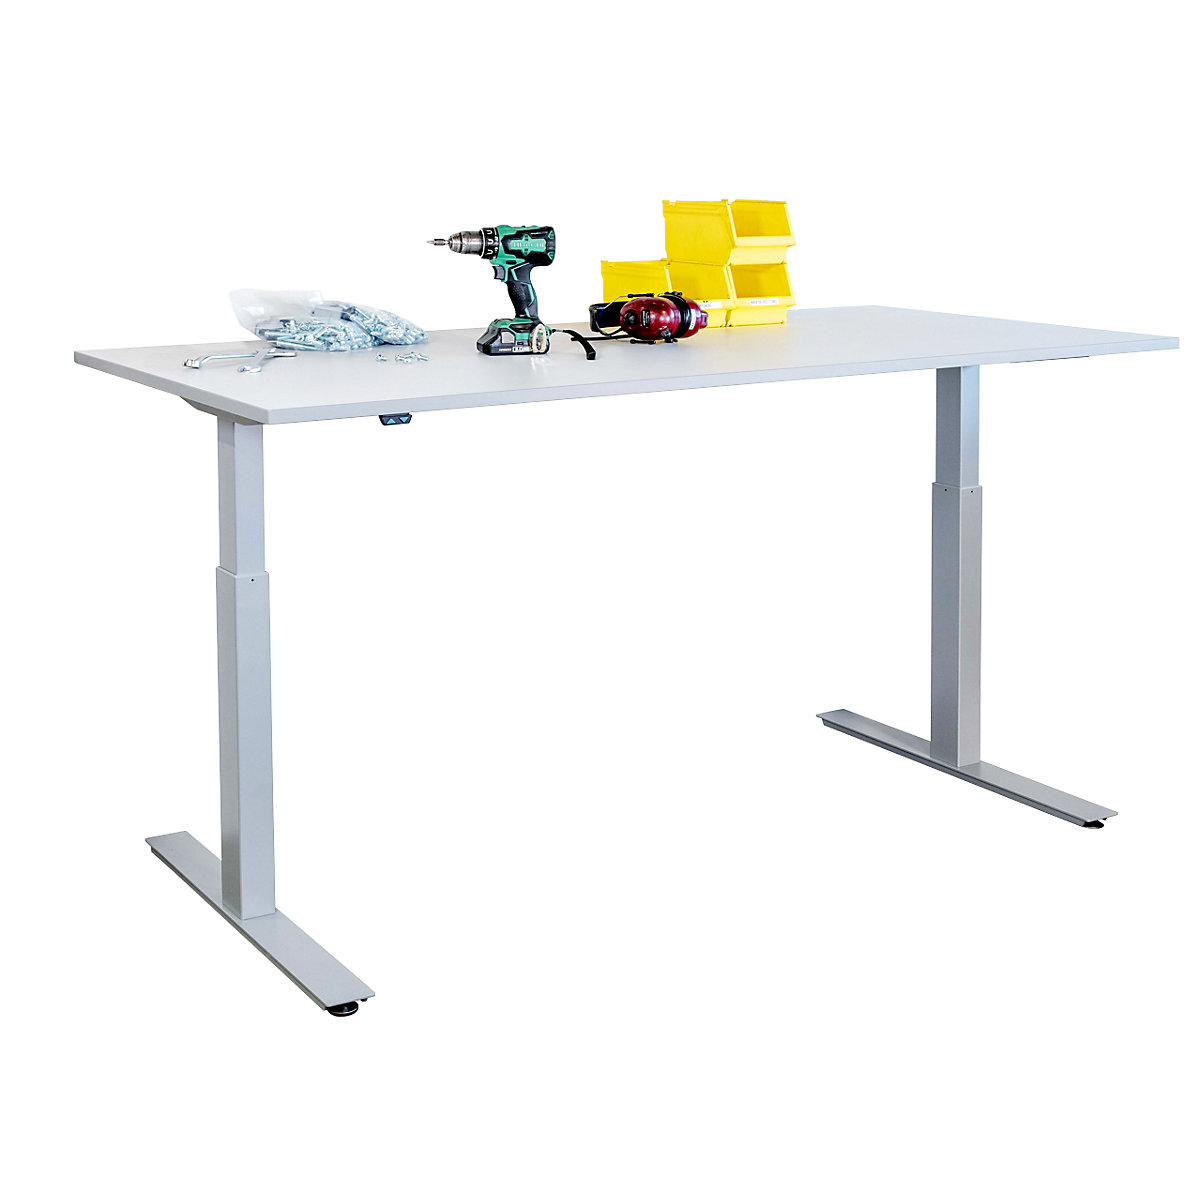 Pracovní stůl s elektrickým přestavováním výšky - eurokraft basic